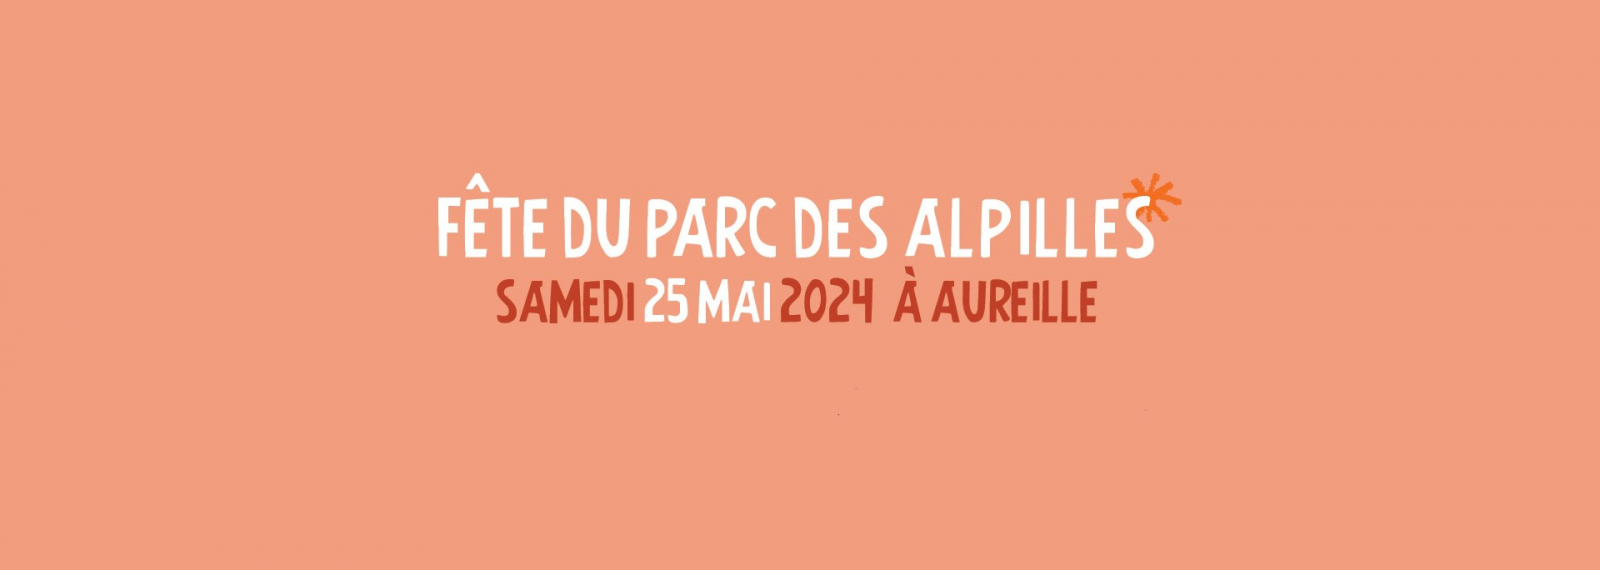 Fête du Parc des Alpilles Aureille 25.05.2024